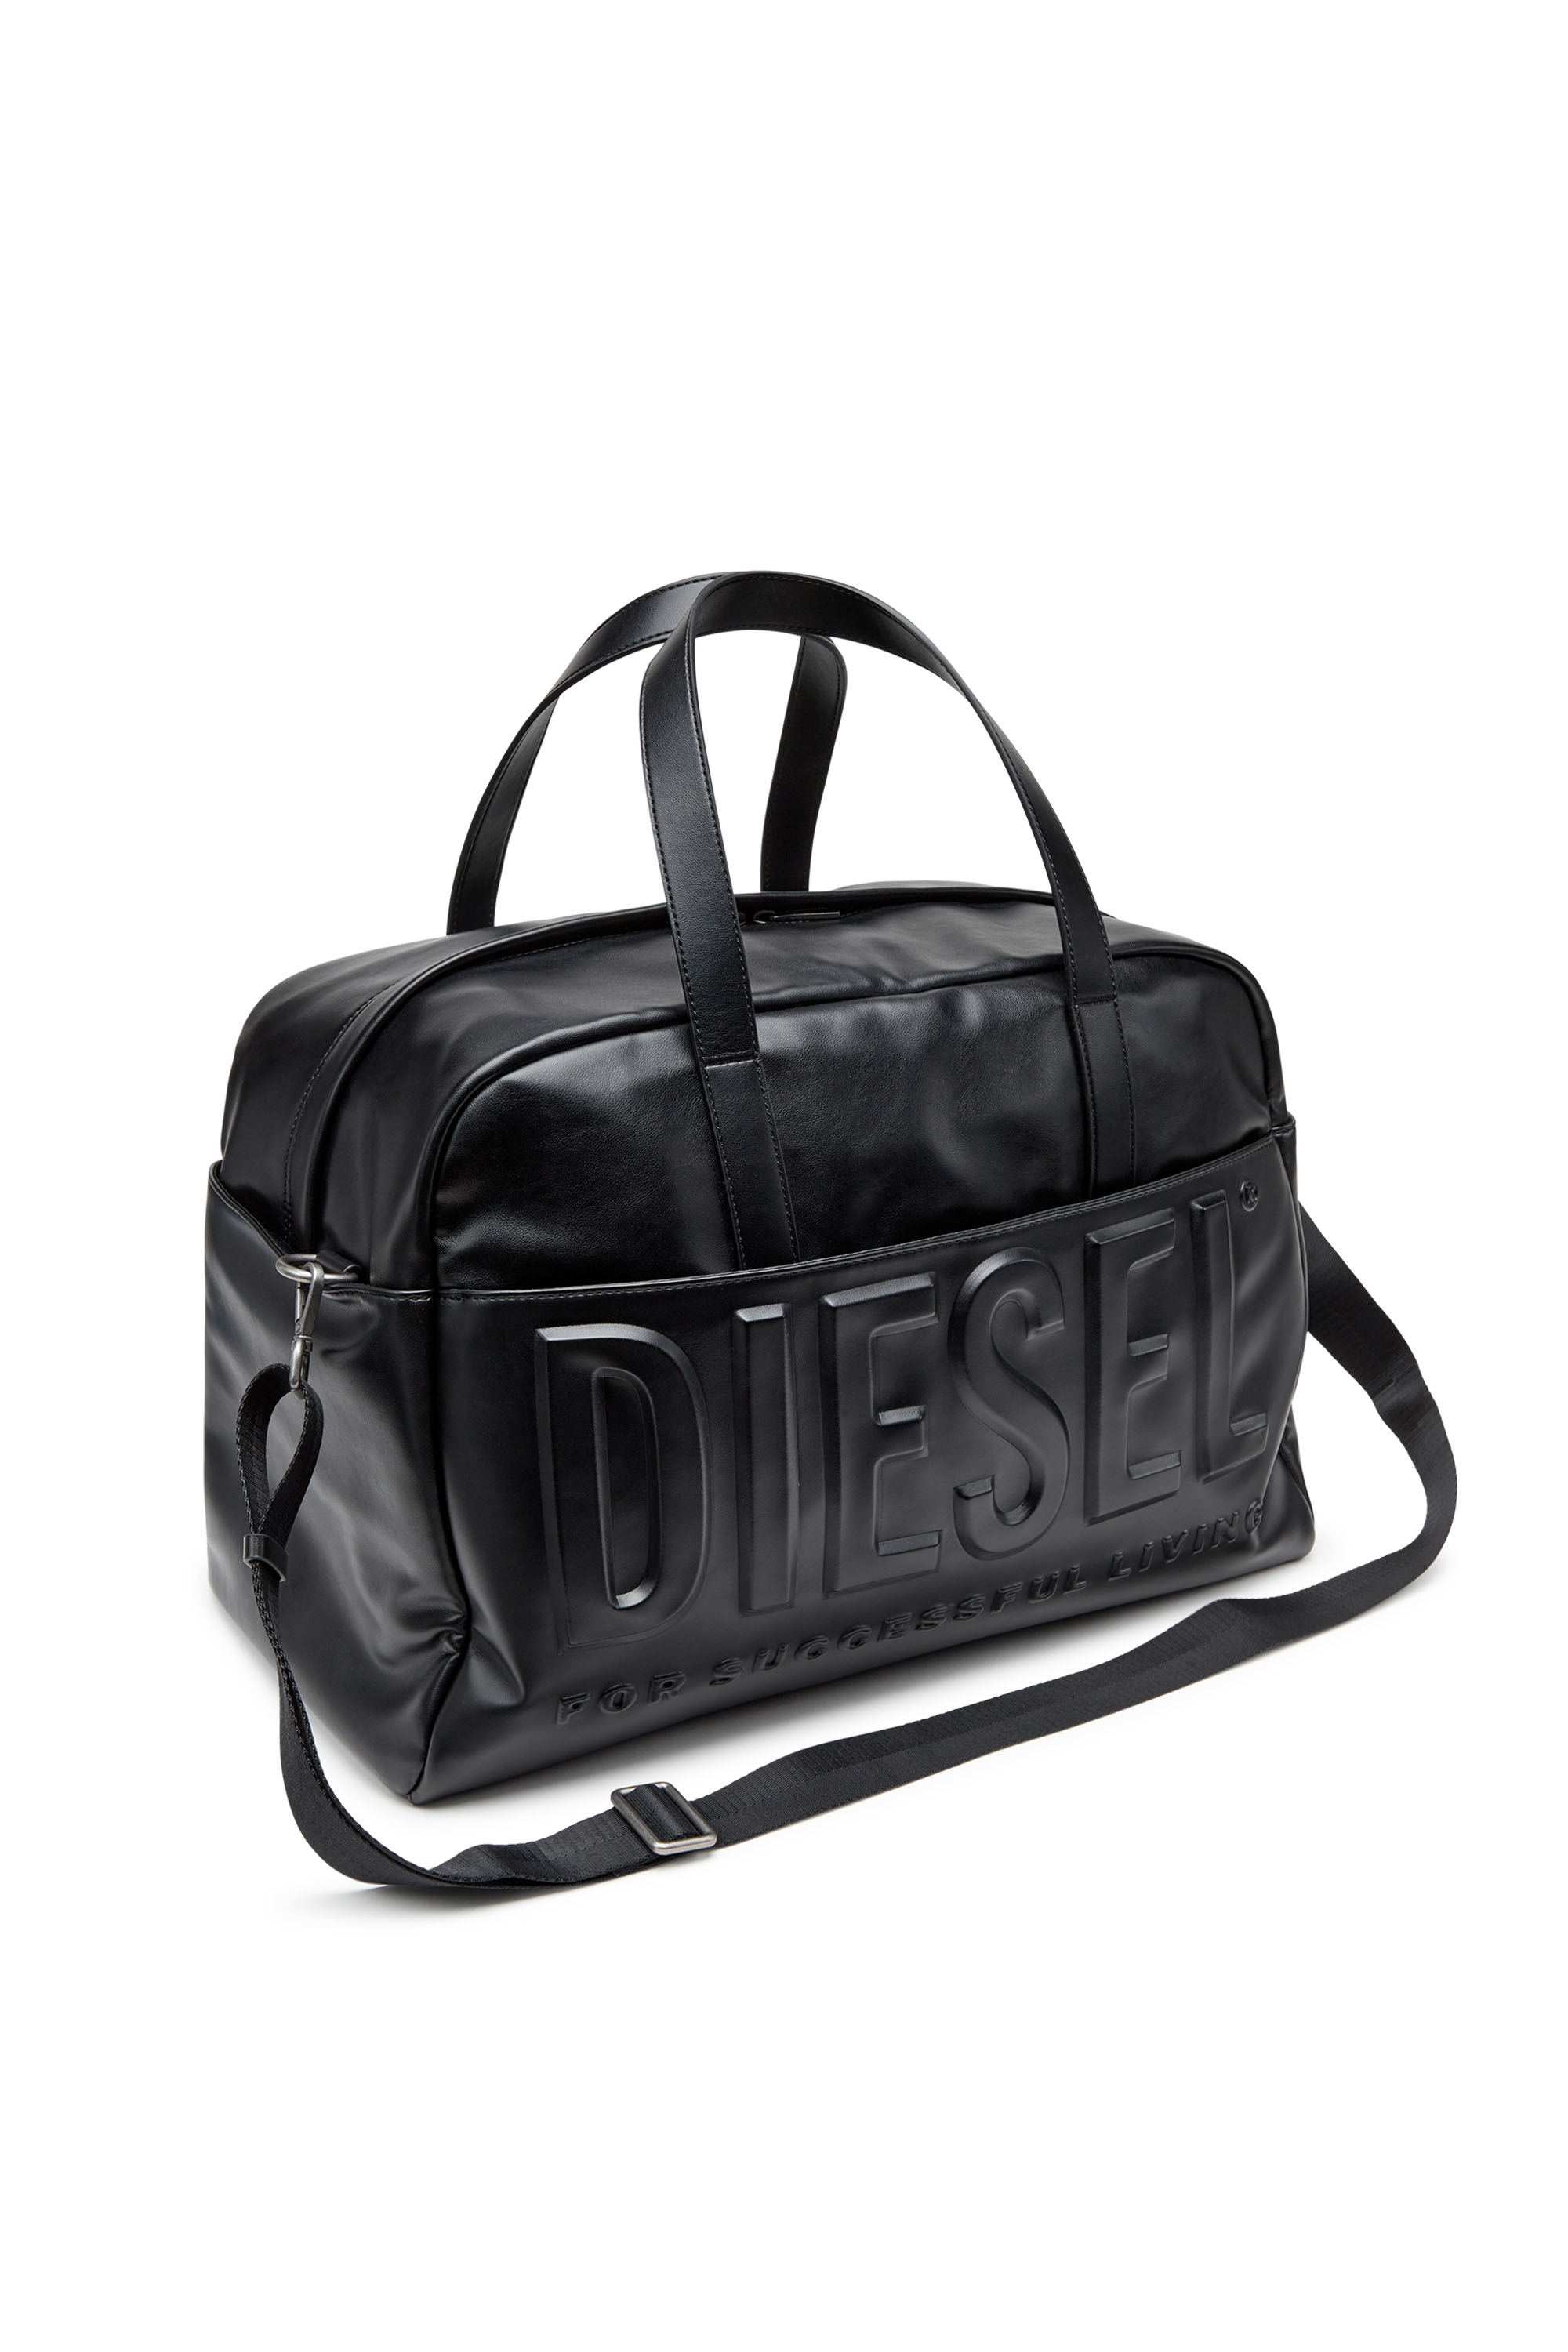 Diesel - DSL 3D DUFFLE L X, Black - Image 6